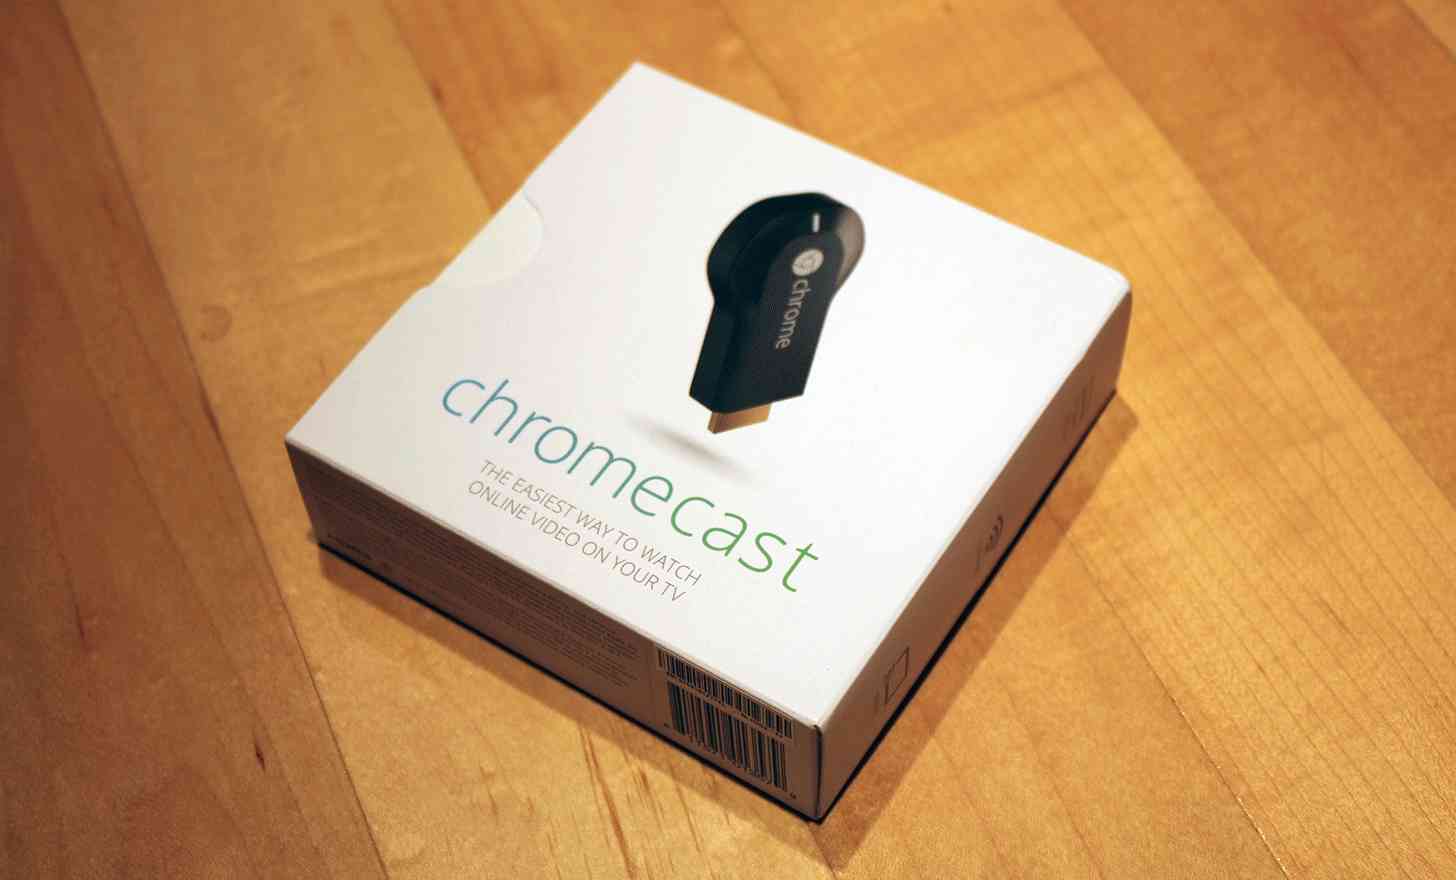 Google Chromecast large